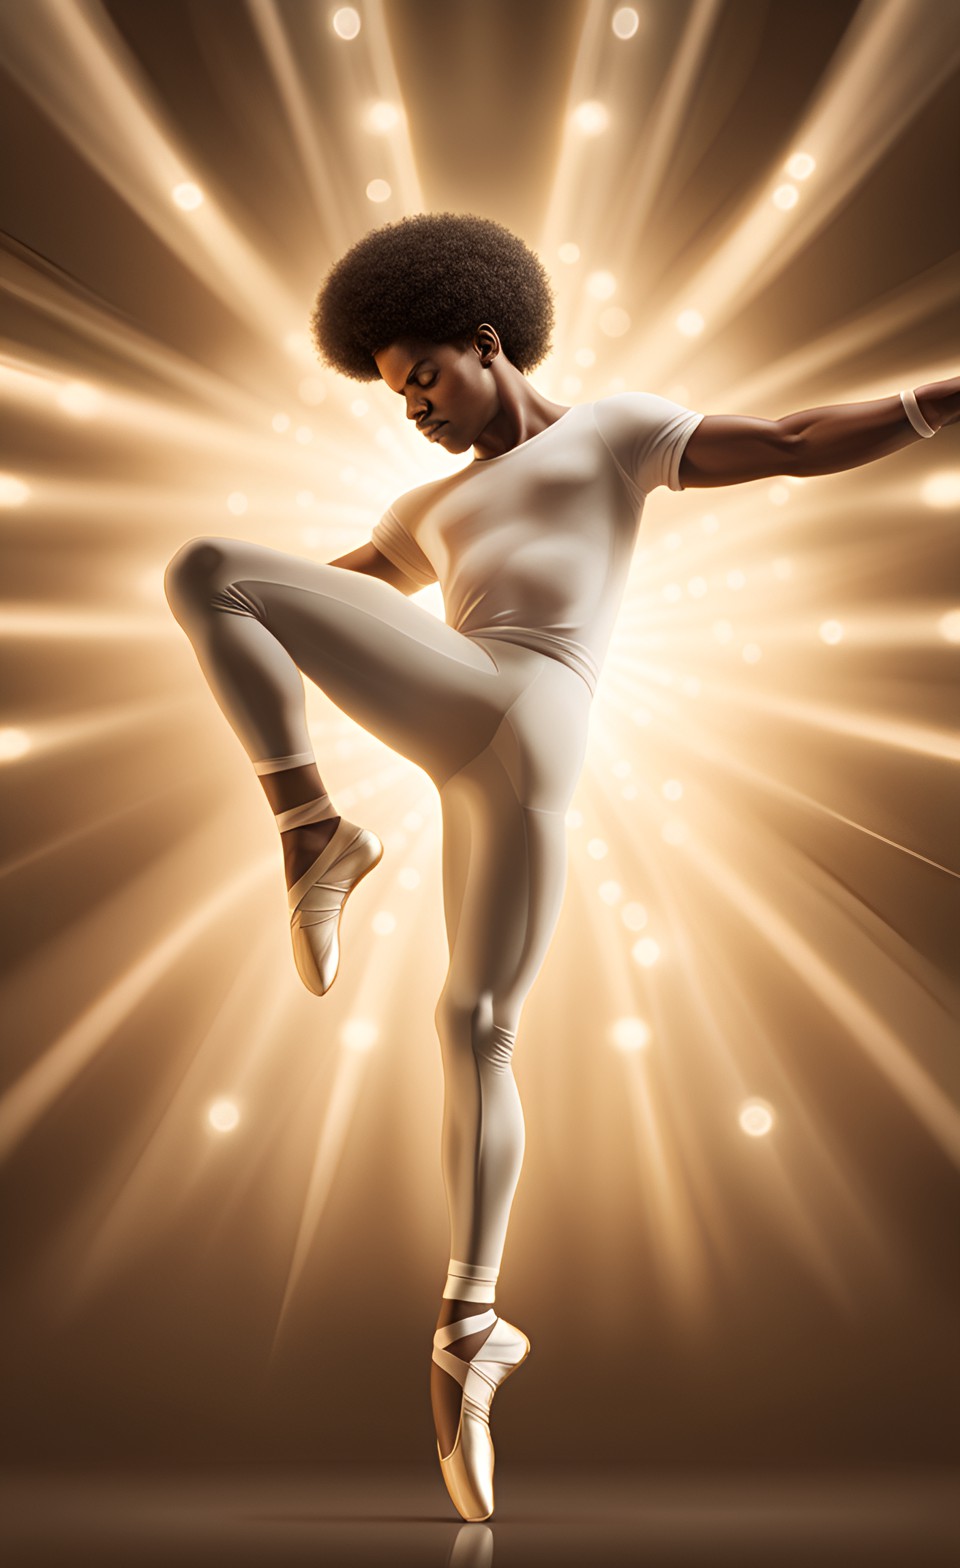 Jamaican magical ballet dancer Jamai206